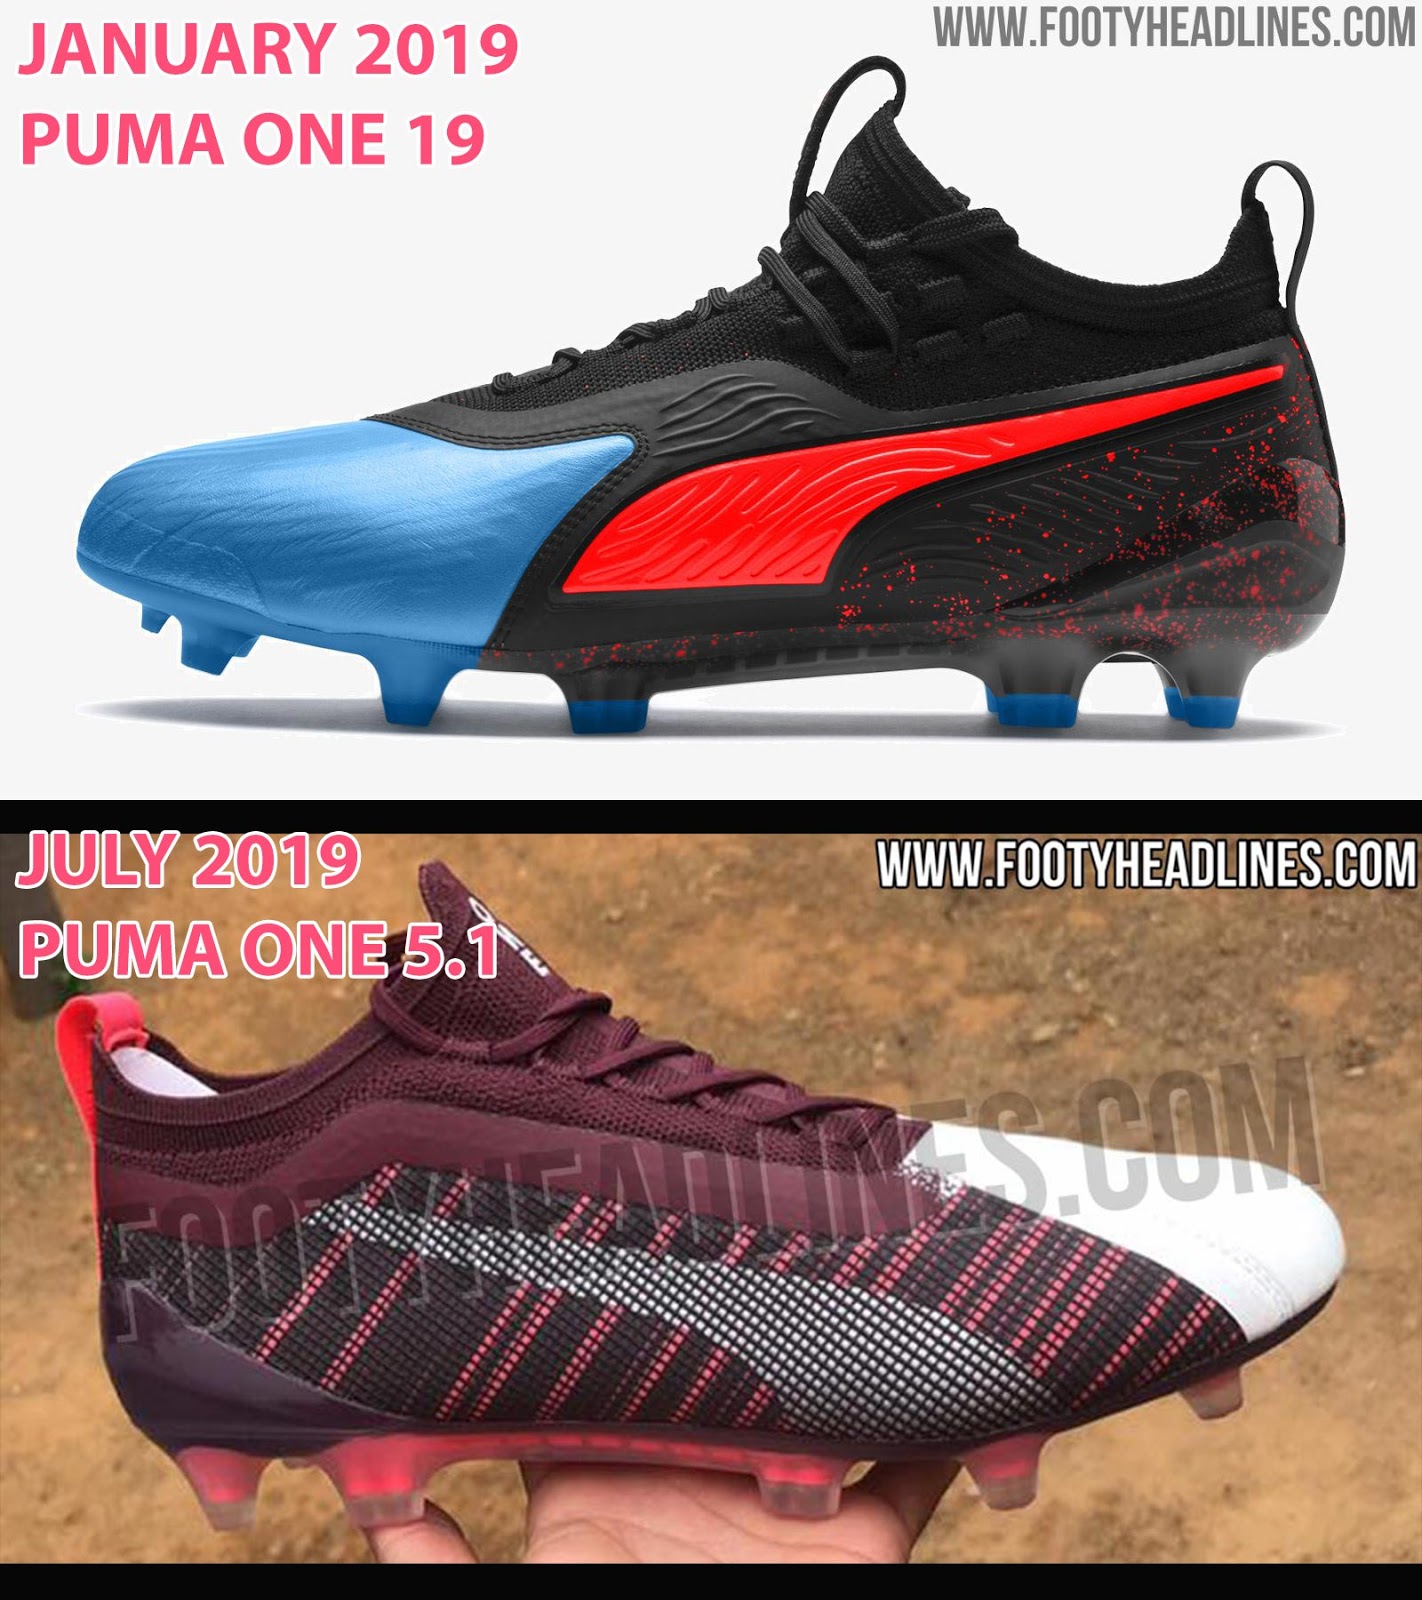 puma new football boots 2019